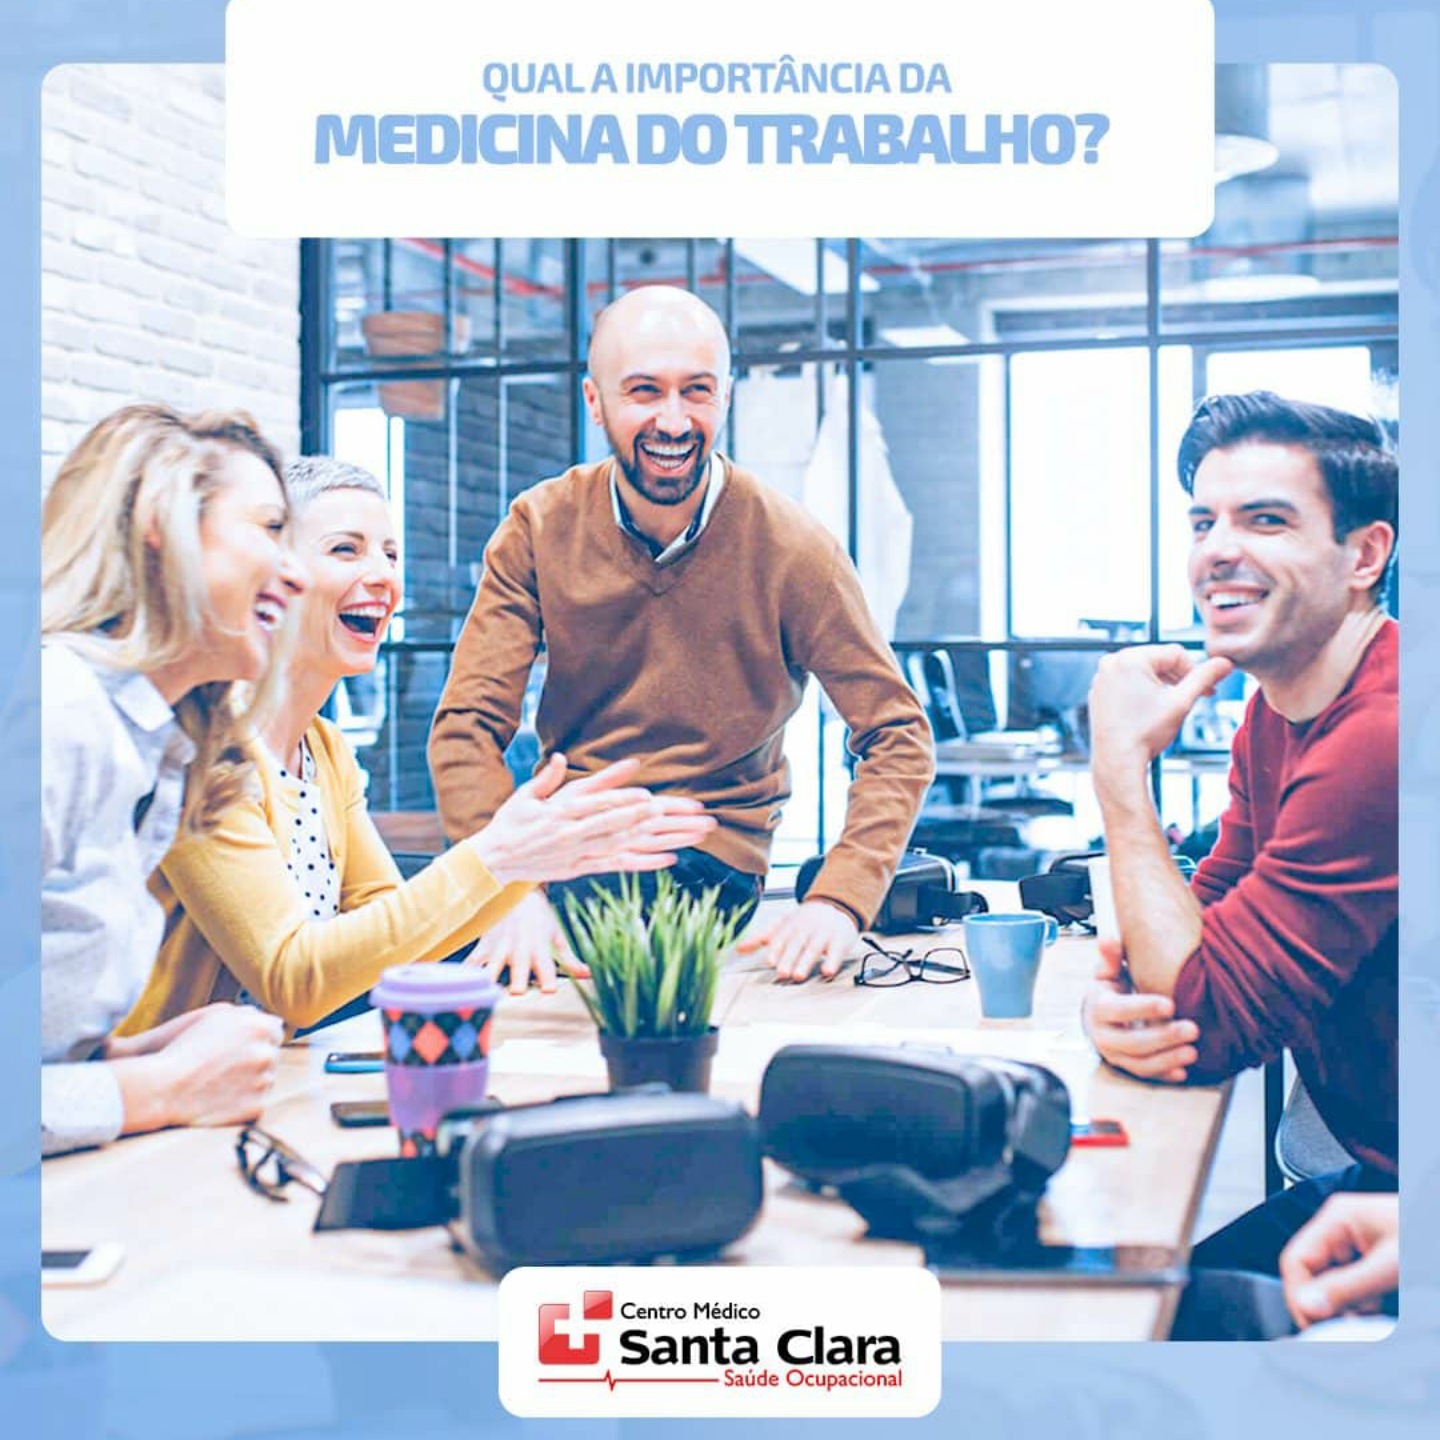 Centro Médico Santa Clara: Invista em um ambiente de trabalho seguro e saudável